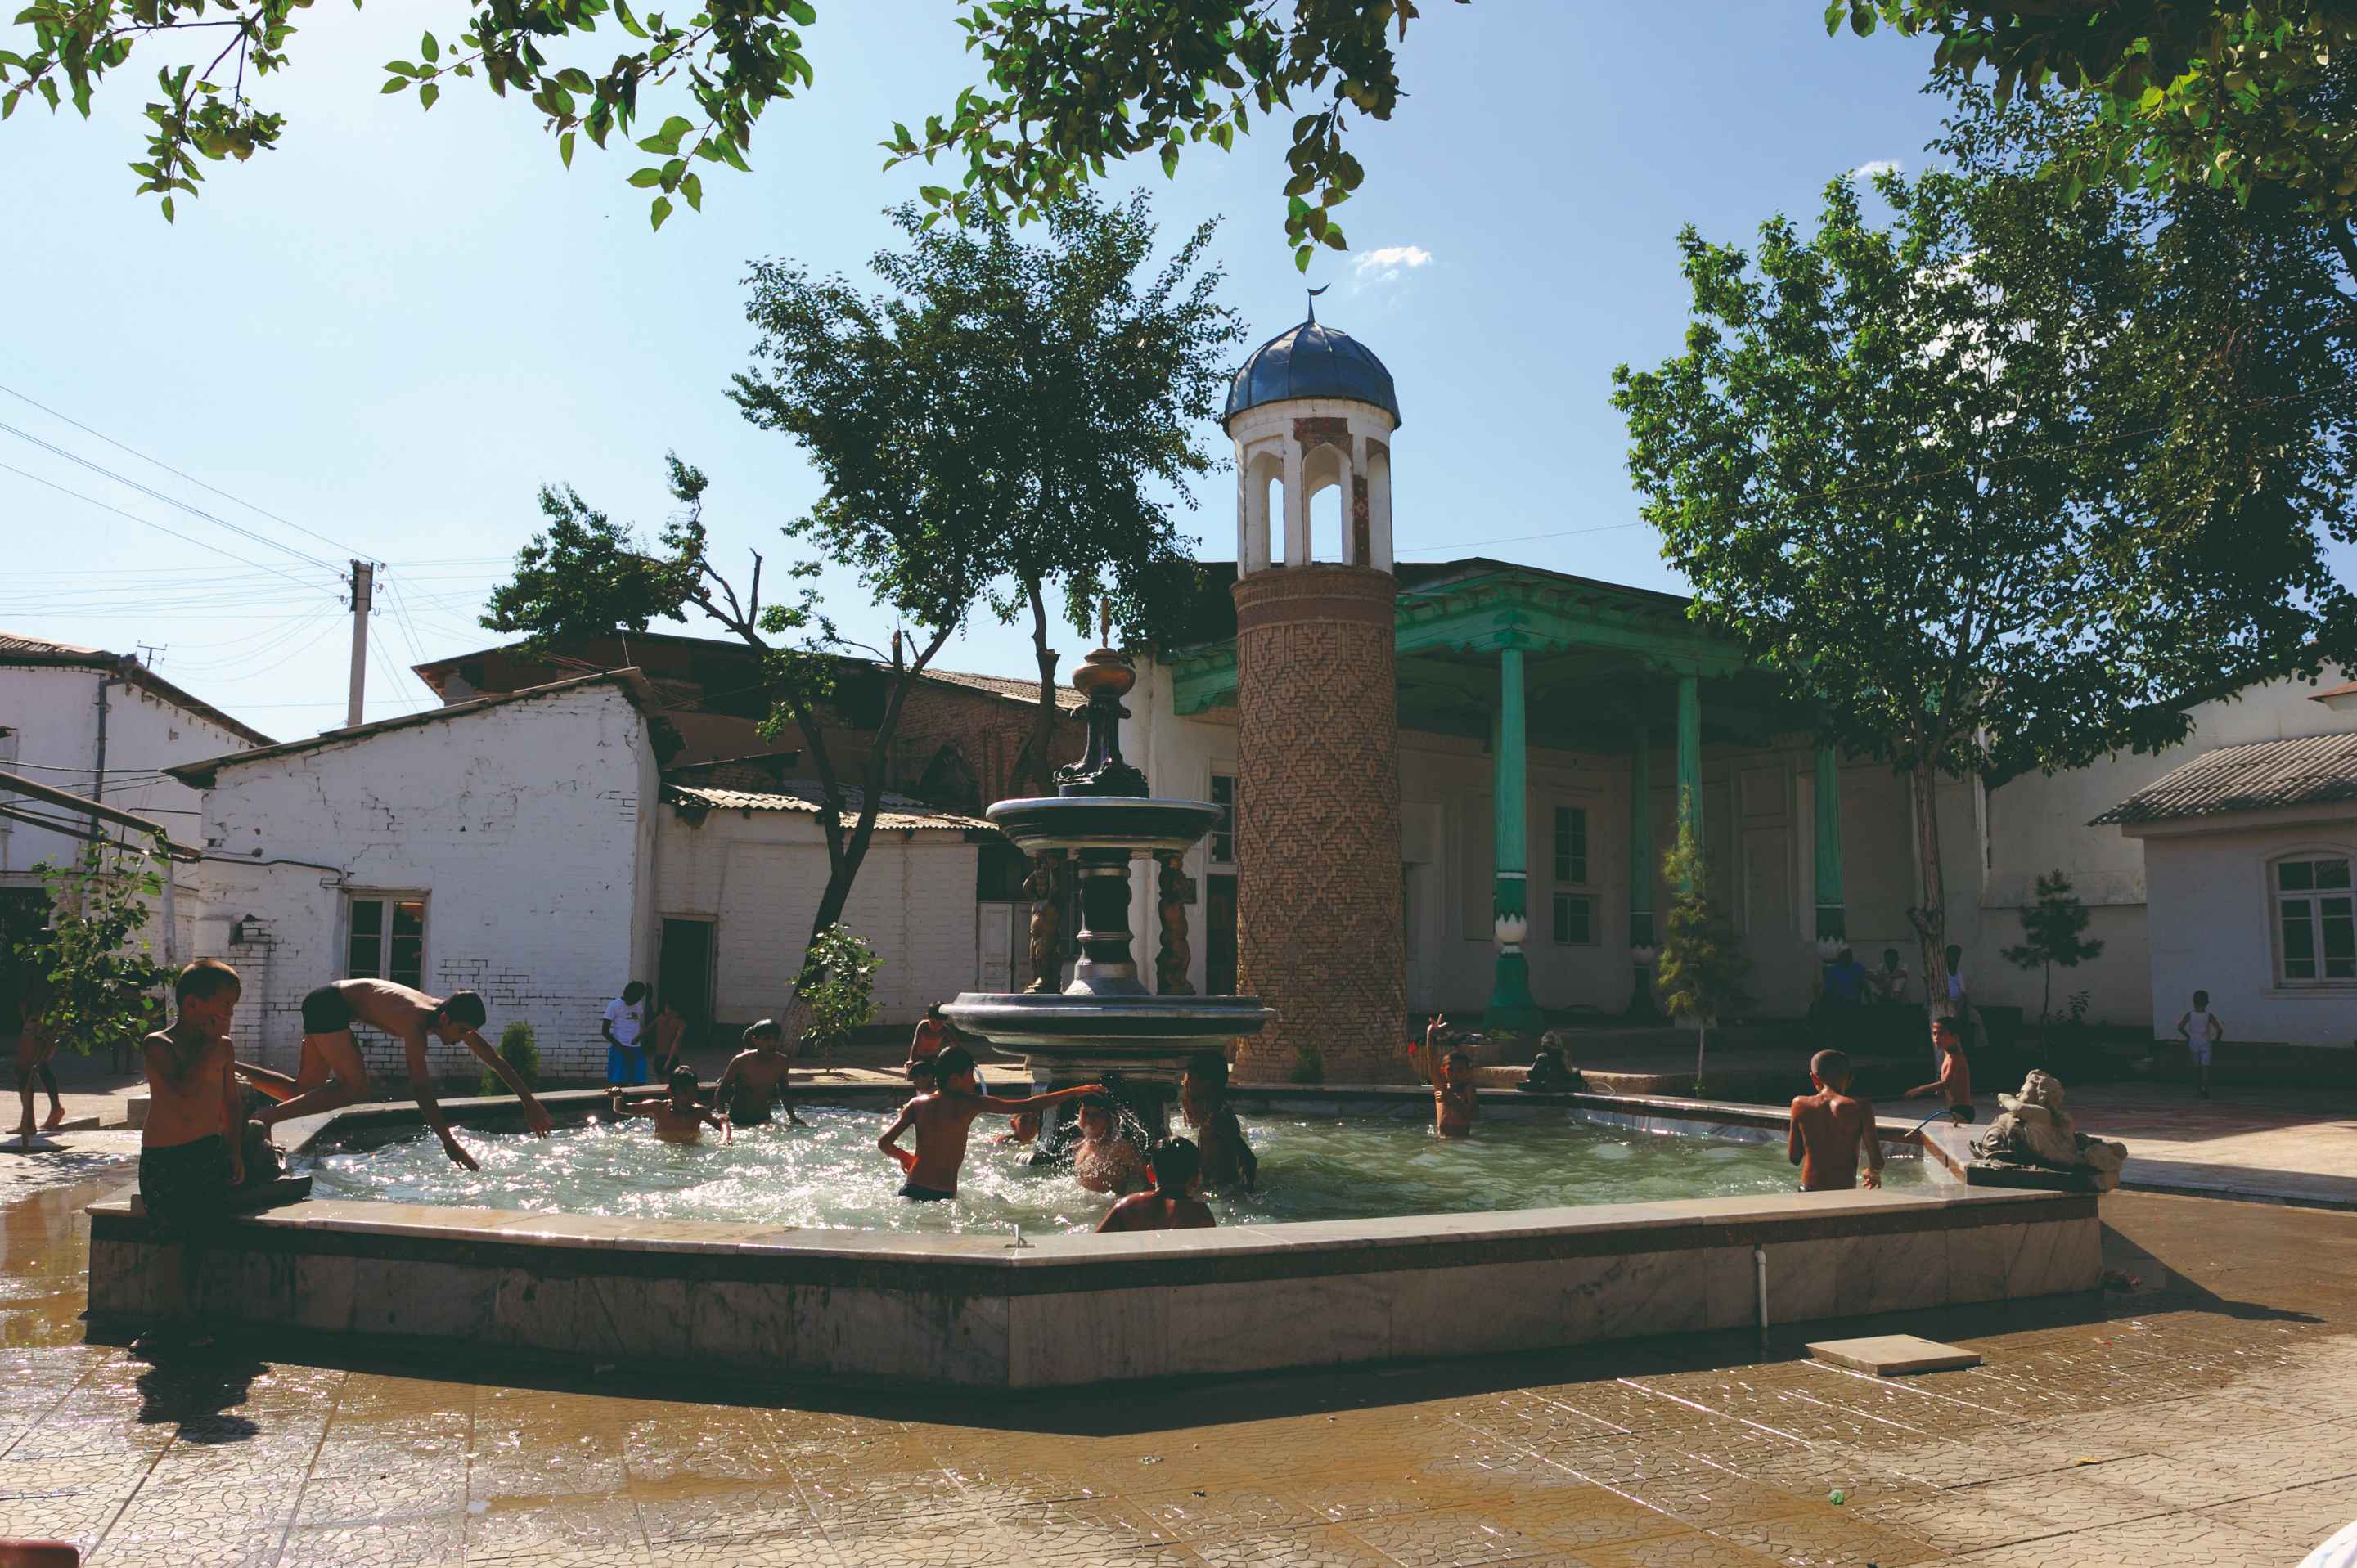 Fontaine près du bazar et de la mosquée Bibi Khanum.